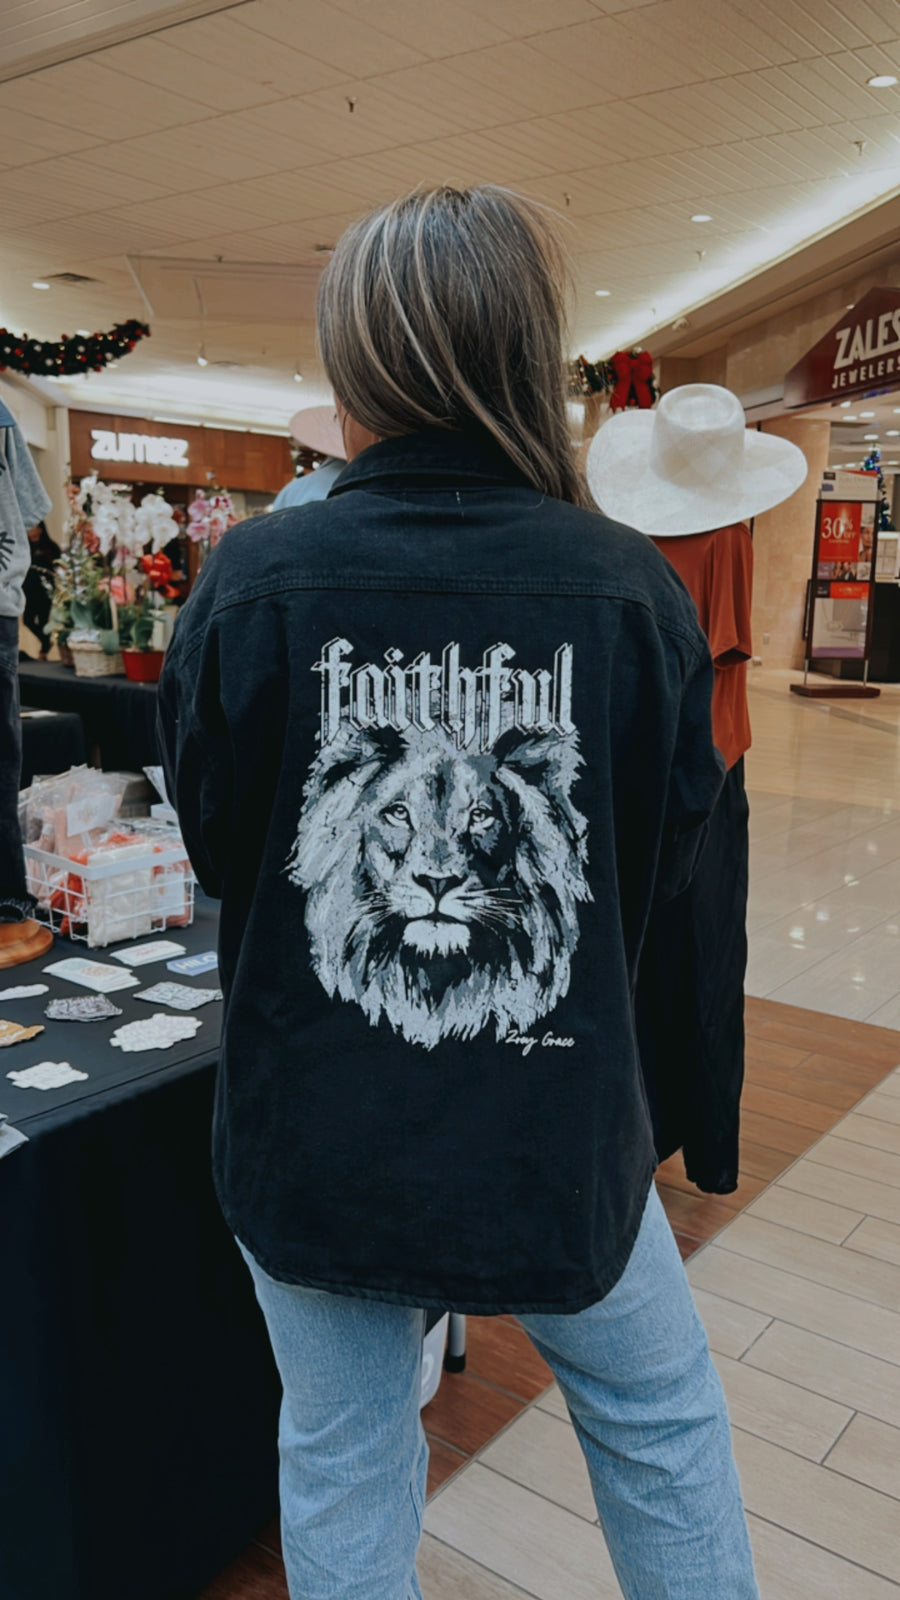 Faithful Jacket